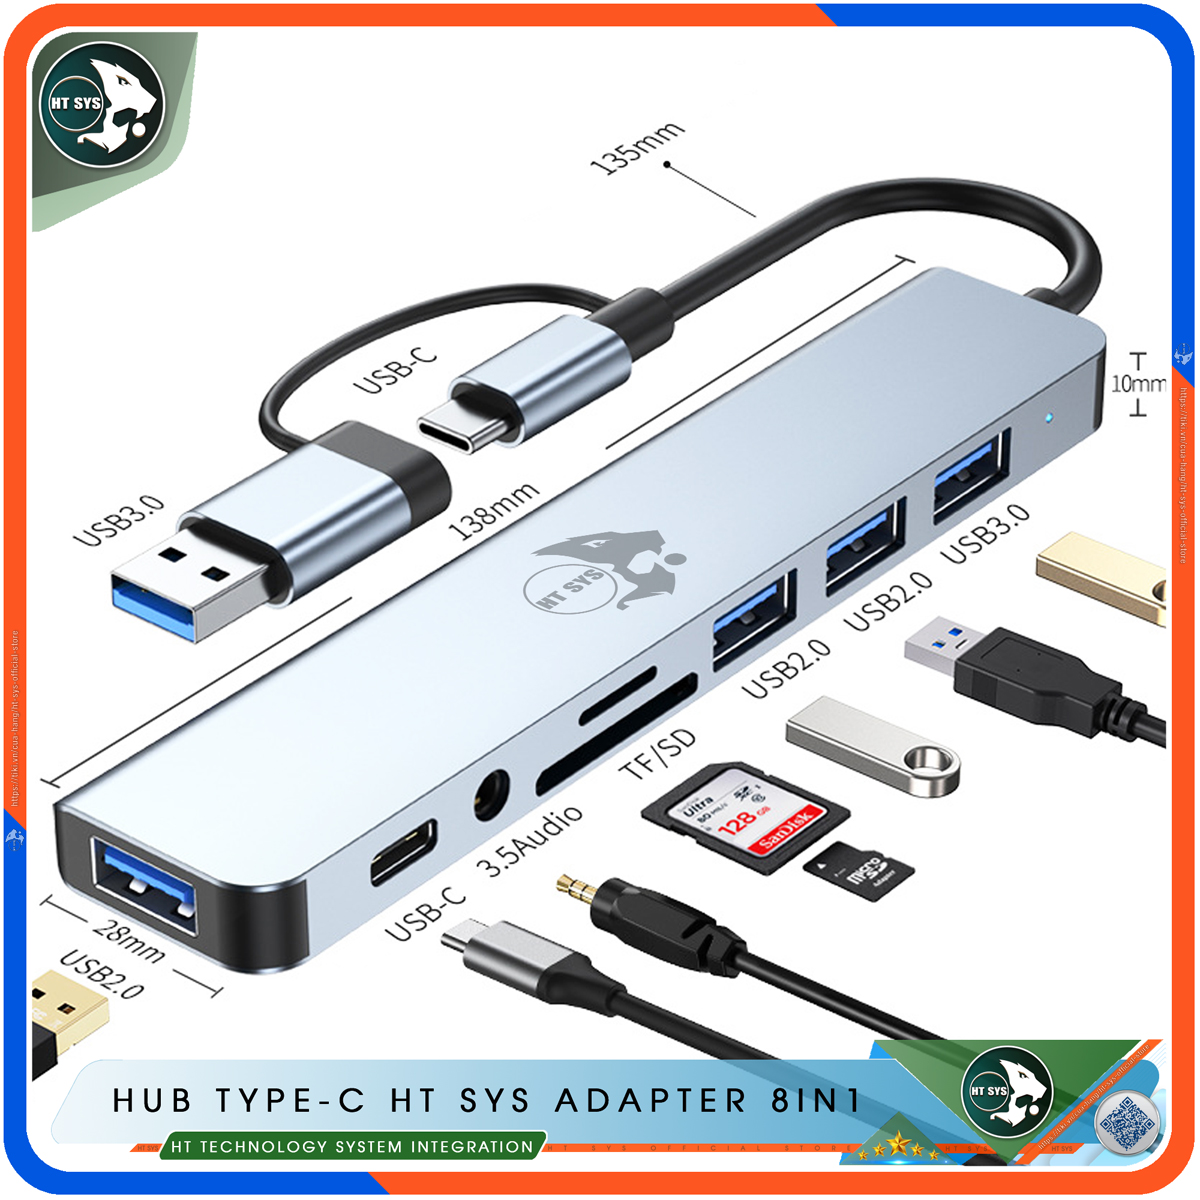 Hub USB 3.0 Và Hub Type C HT SYS Adapter 8in1 - Cổng Chia USB Mở Rộng Kết Nối Tốc Độ Cao Dành Cho Macbook, Laptop, PC - Hub Chuyển Đổi USB Type-C Hỗ Trợ Sạc Pin, Kết Nối Đa Năng ổ Cứng, Bàn Phím, Chuột, Máy In, Ổ Chia USB - Hàng Chính Hãng